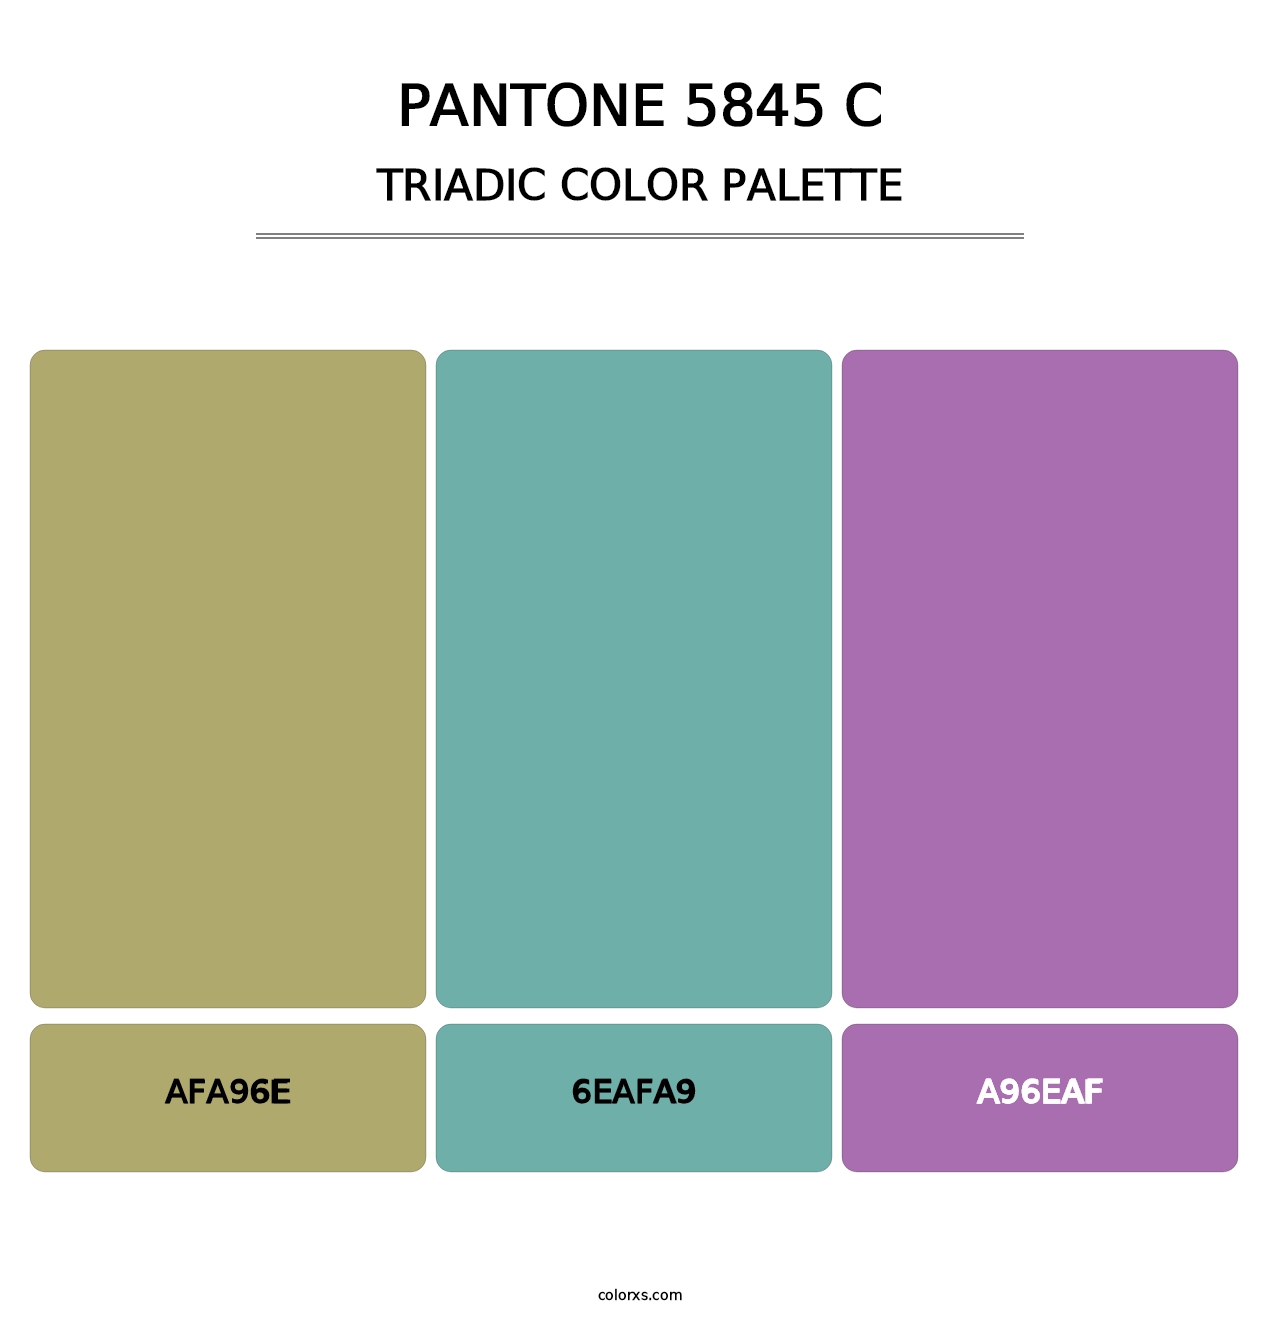 PANTONE 5845 C - Triadic Color Palette